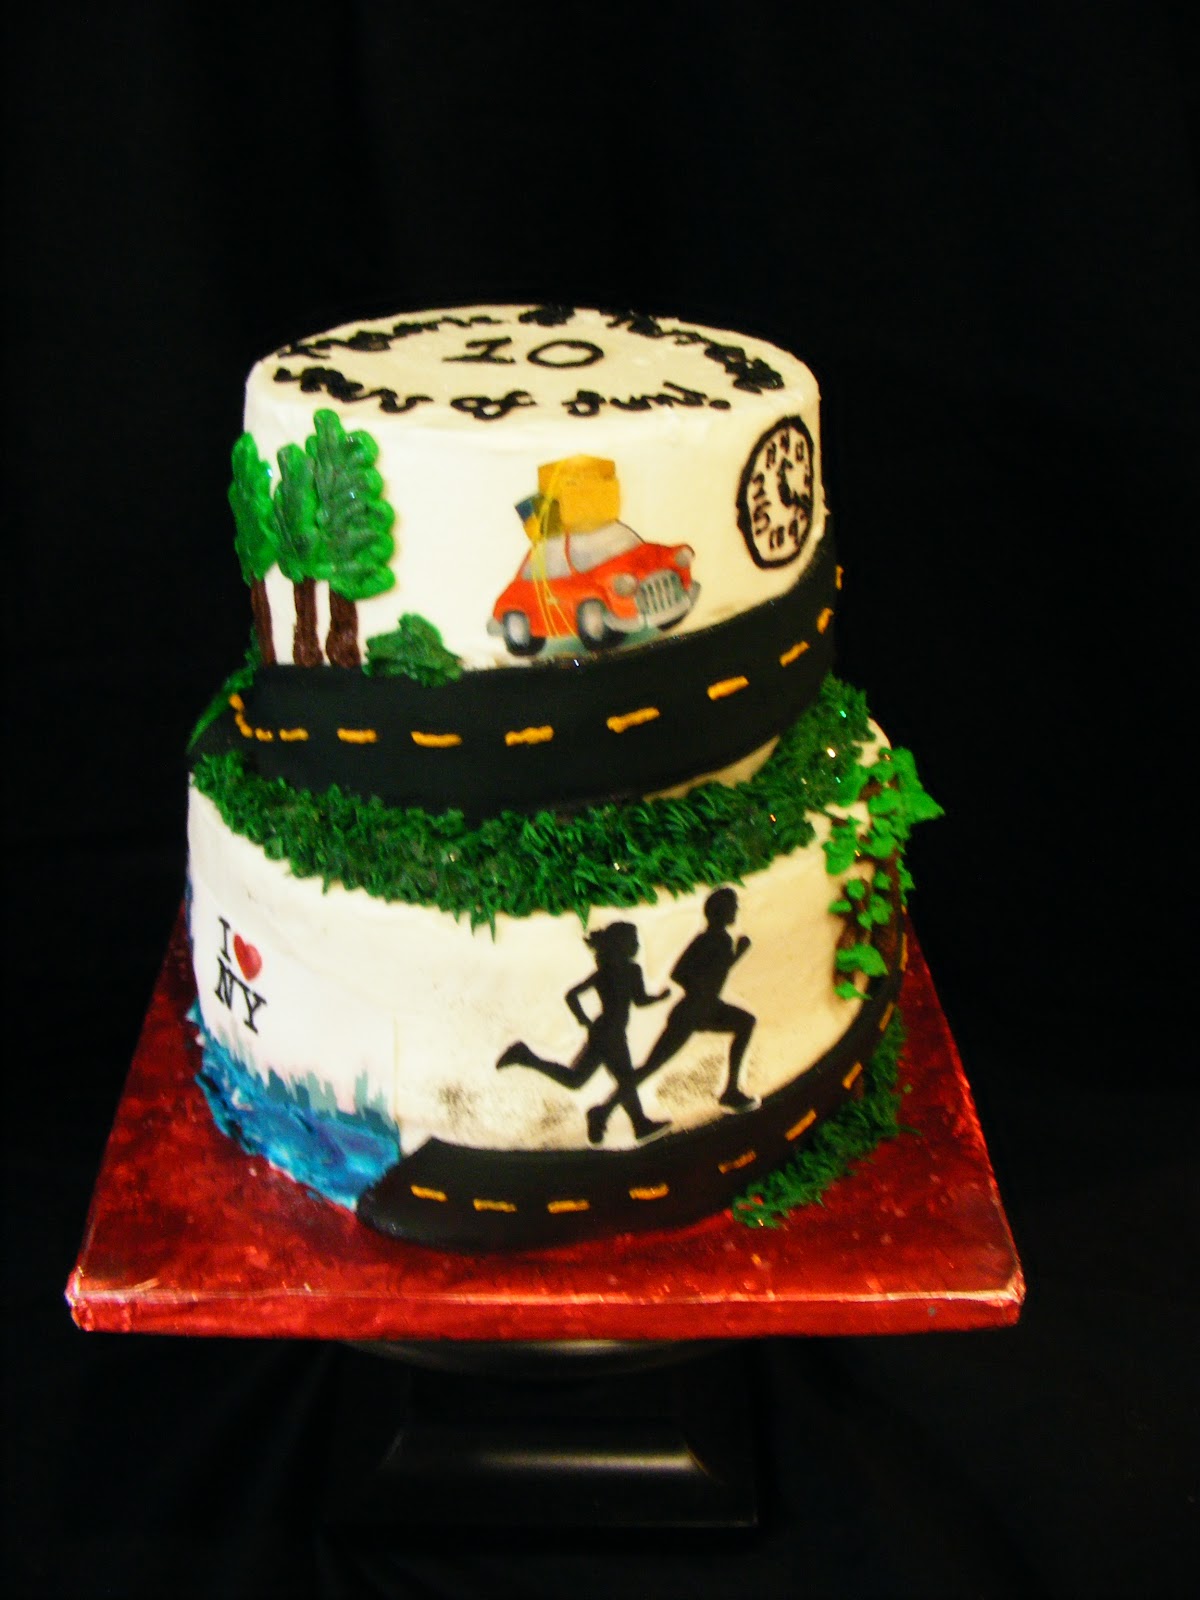 10 Year Wedding Anniversary Cakes